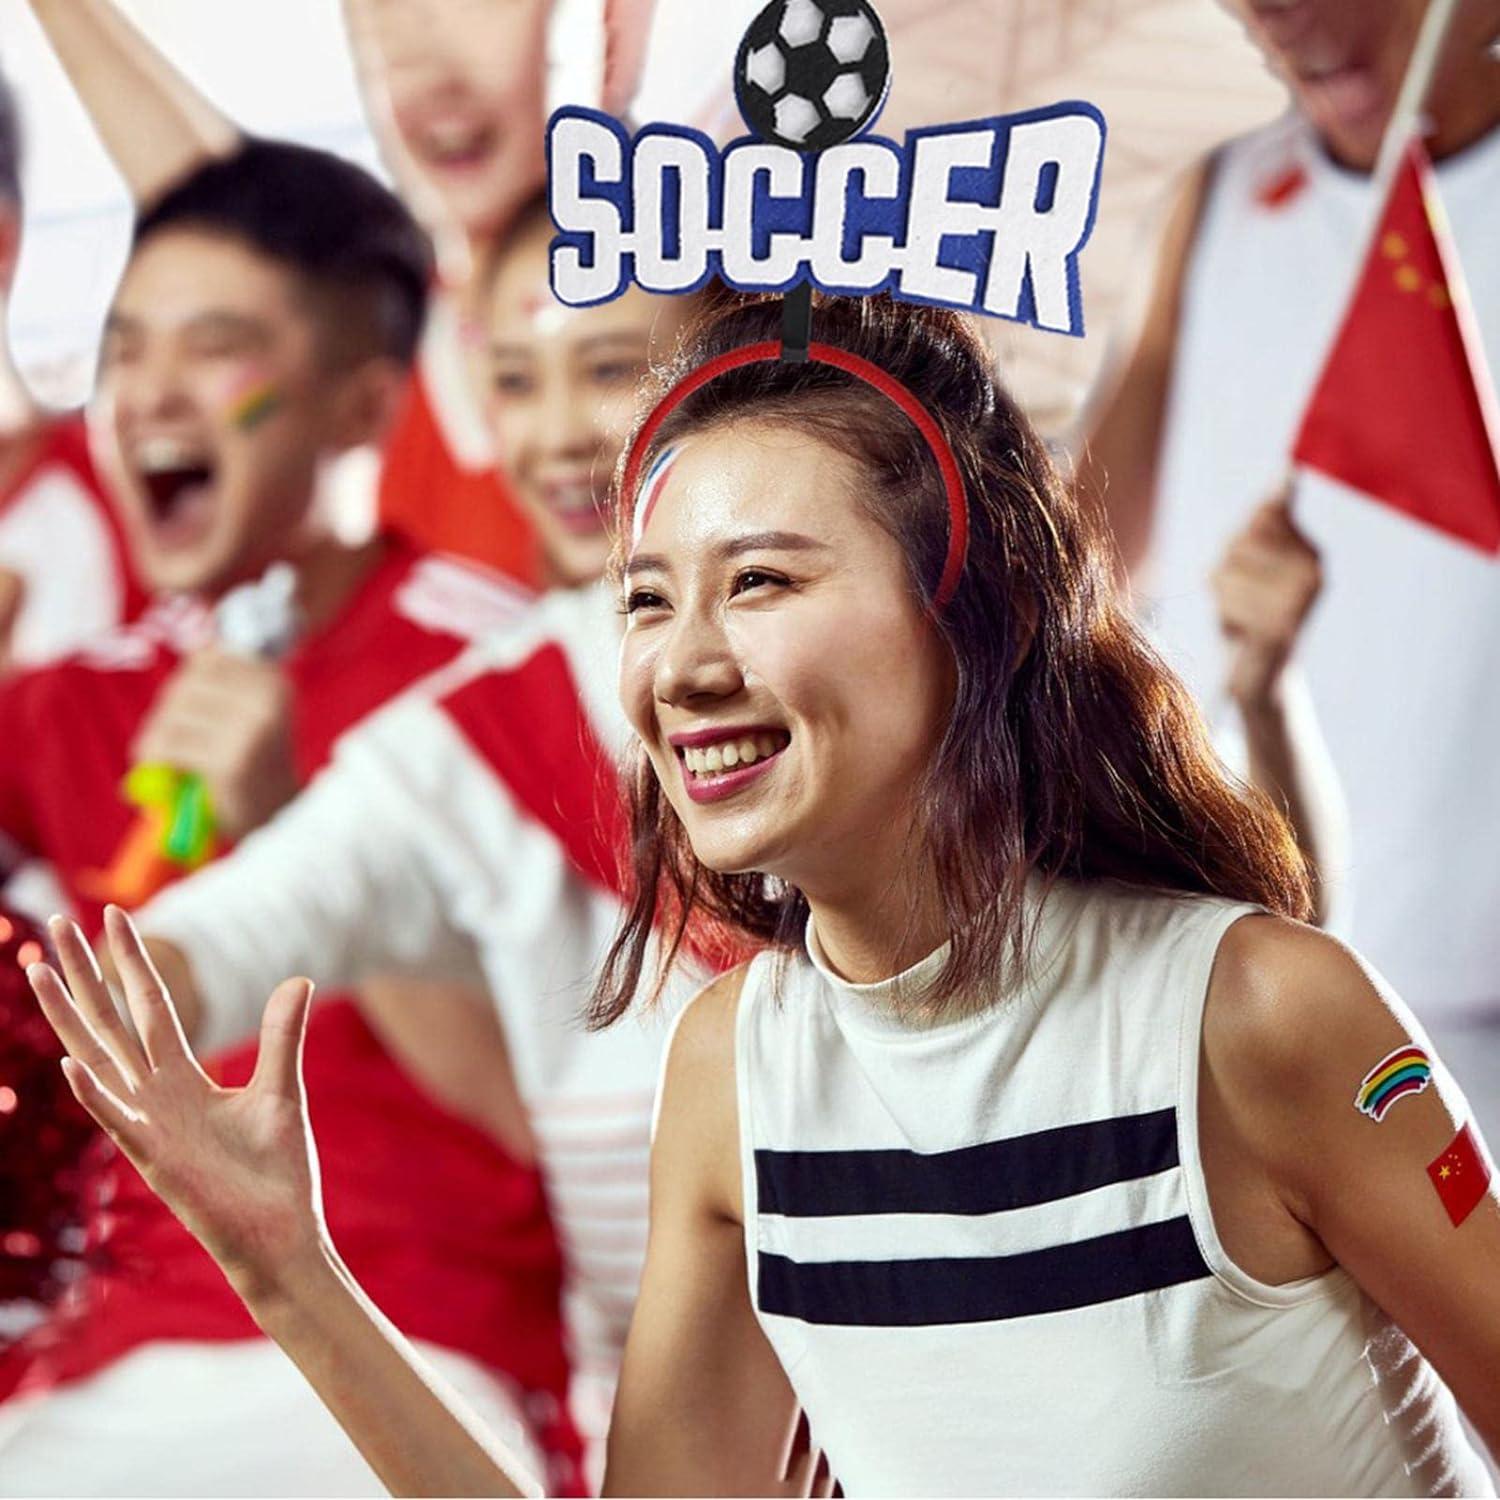 Băng Đô Bóng Đá | Băng đô cài tóc cổ vũ cho World Cup - Băng đô cài tóc dành cho nam và nữ, Phụ kiện thi đấu thể thao Chung